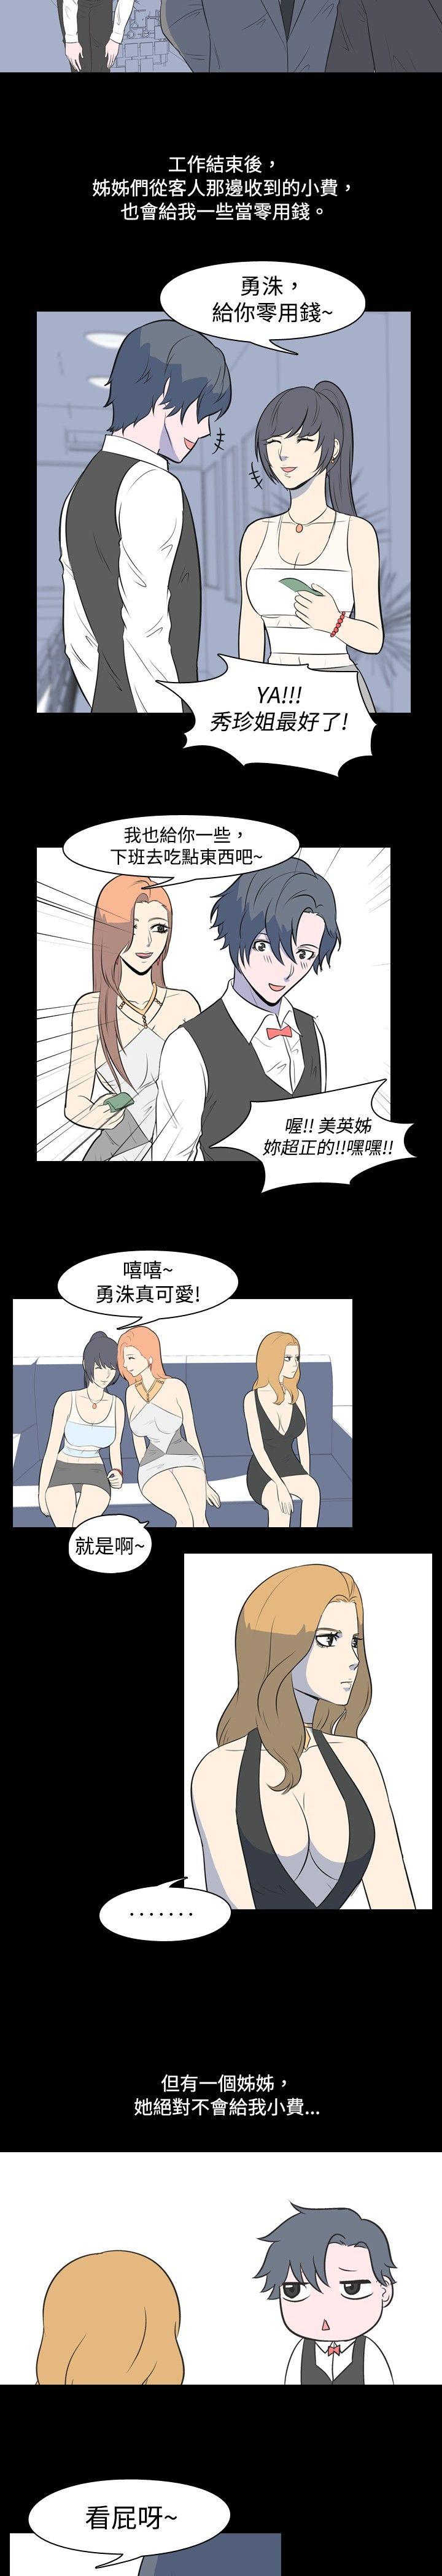 韩国污漫画 我的色色夜說 第14话-可怕的酒店姊姊(上) 2